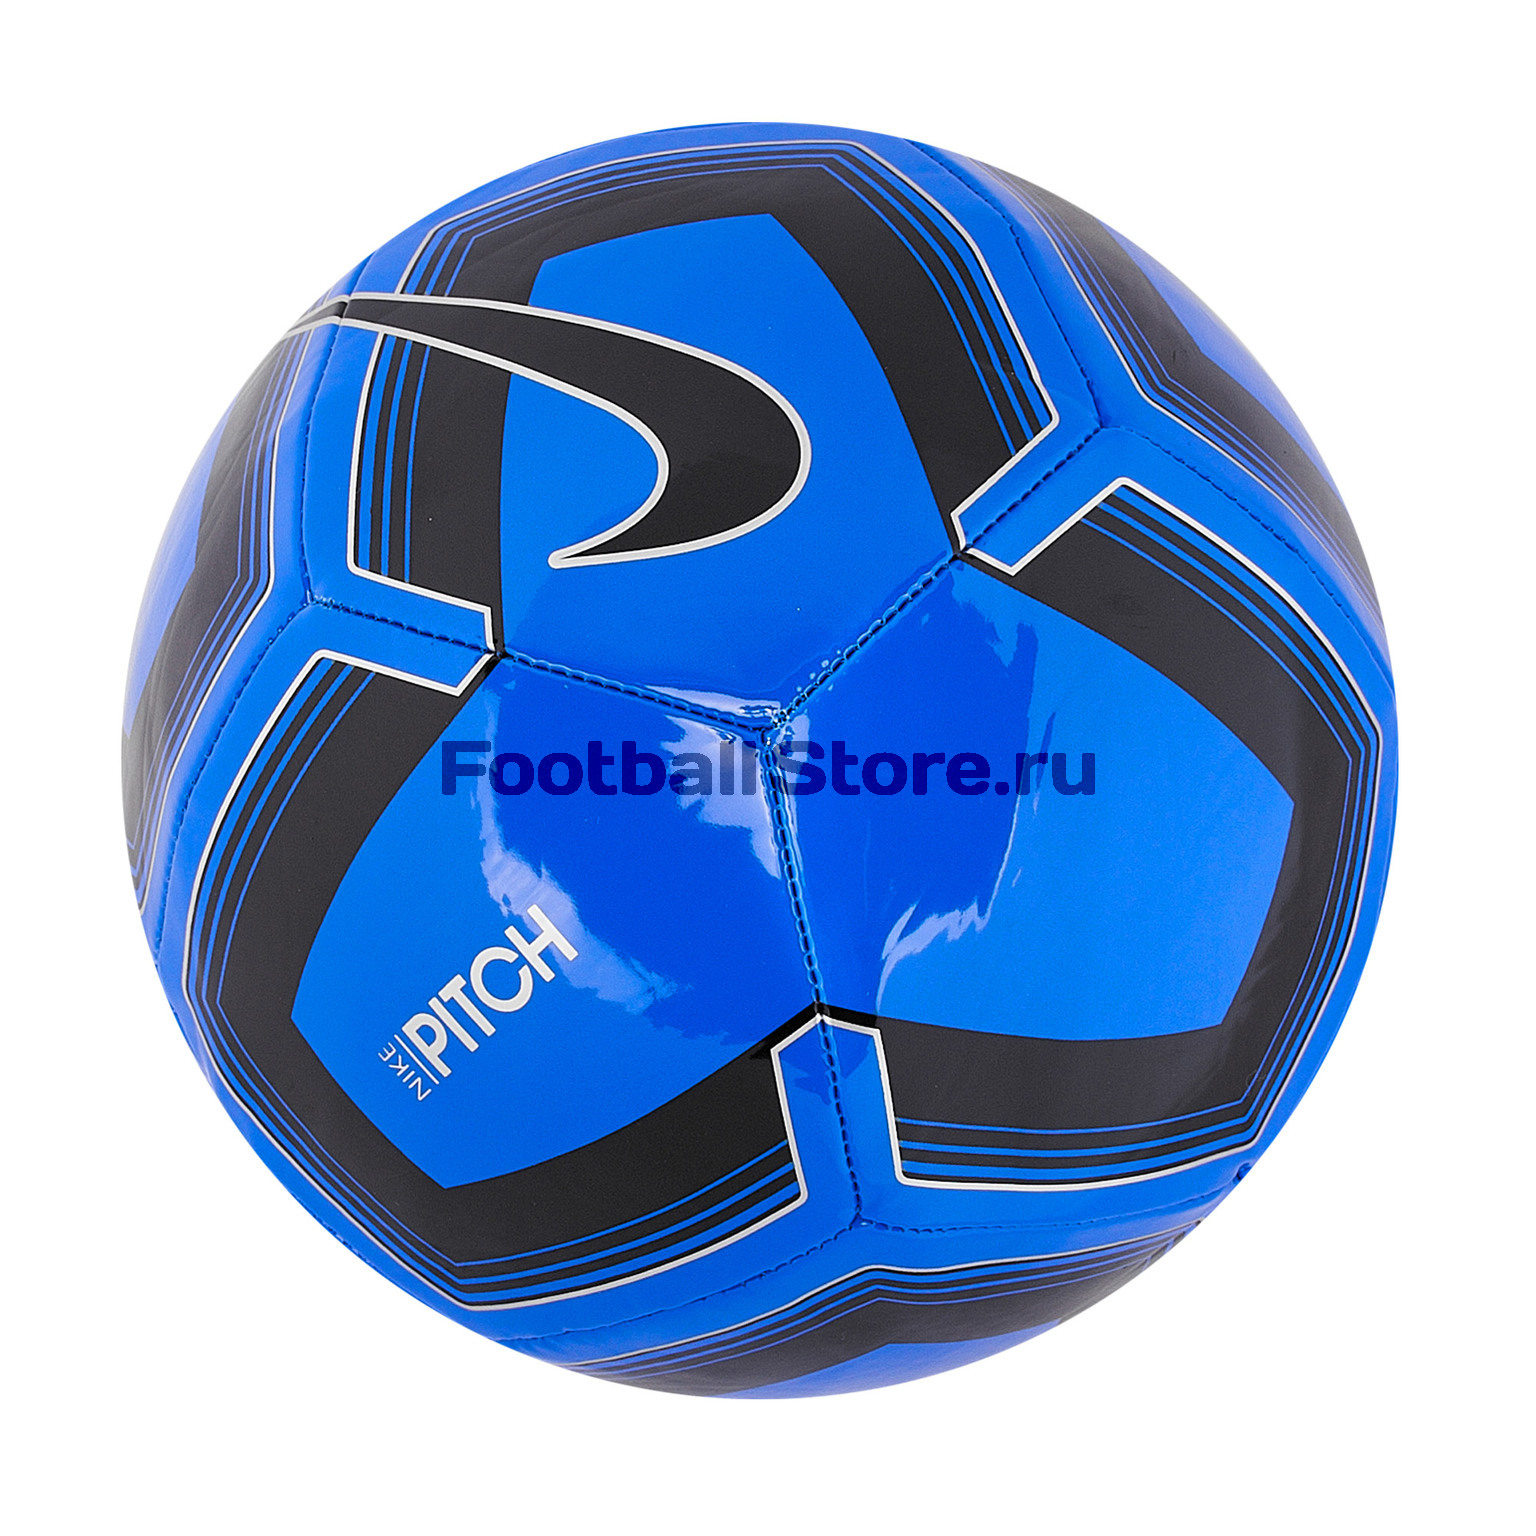 Футбольный мяч Nike Pitch Training SC3893-410